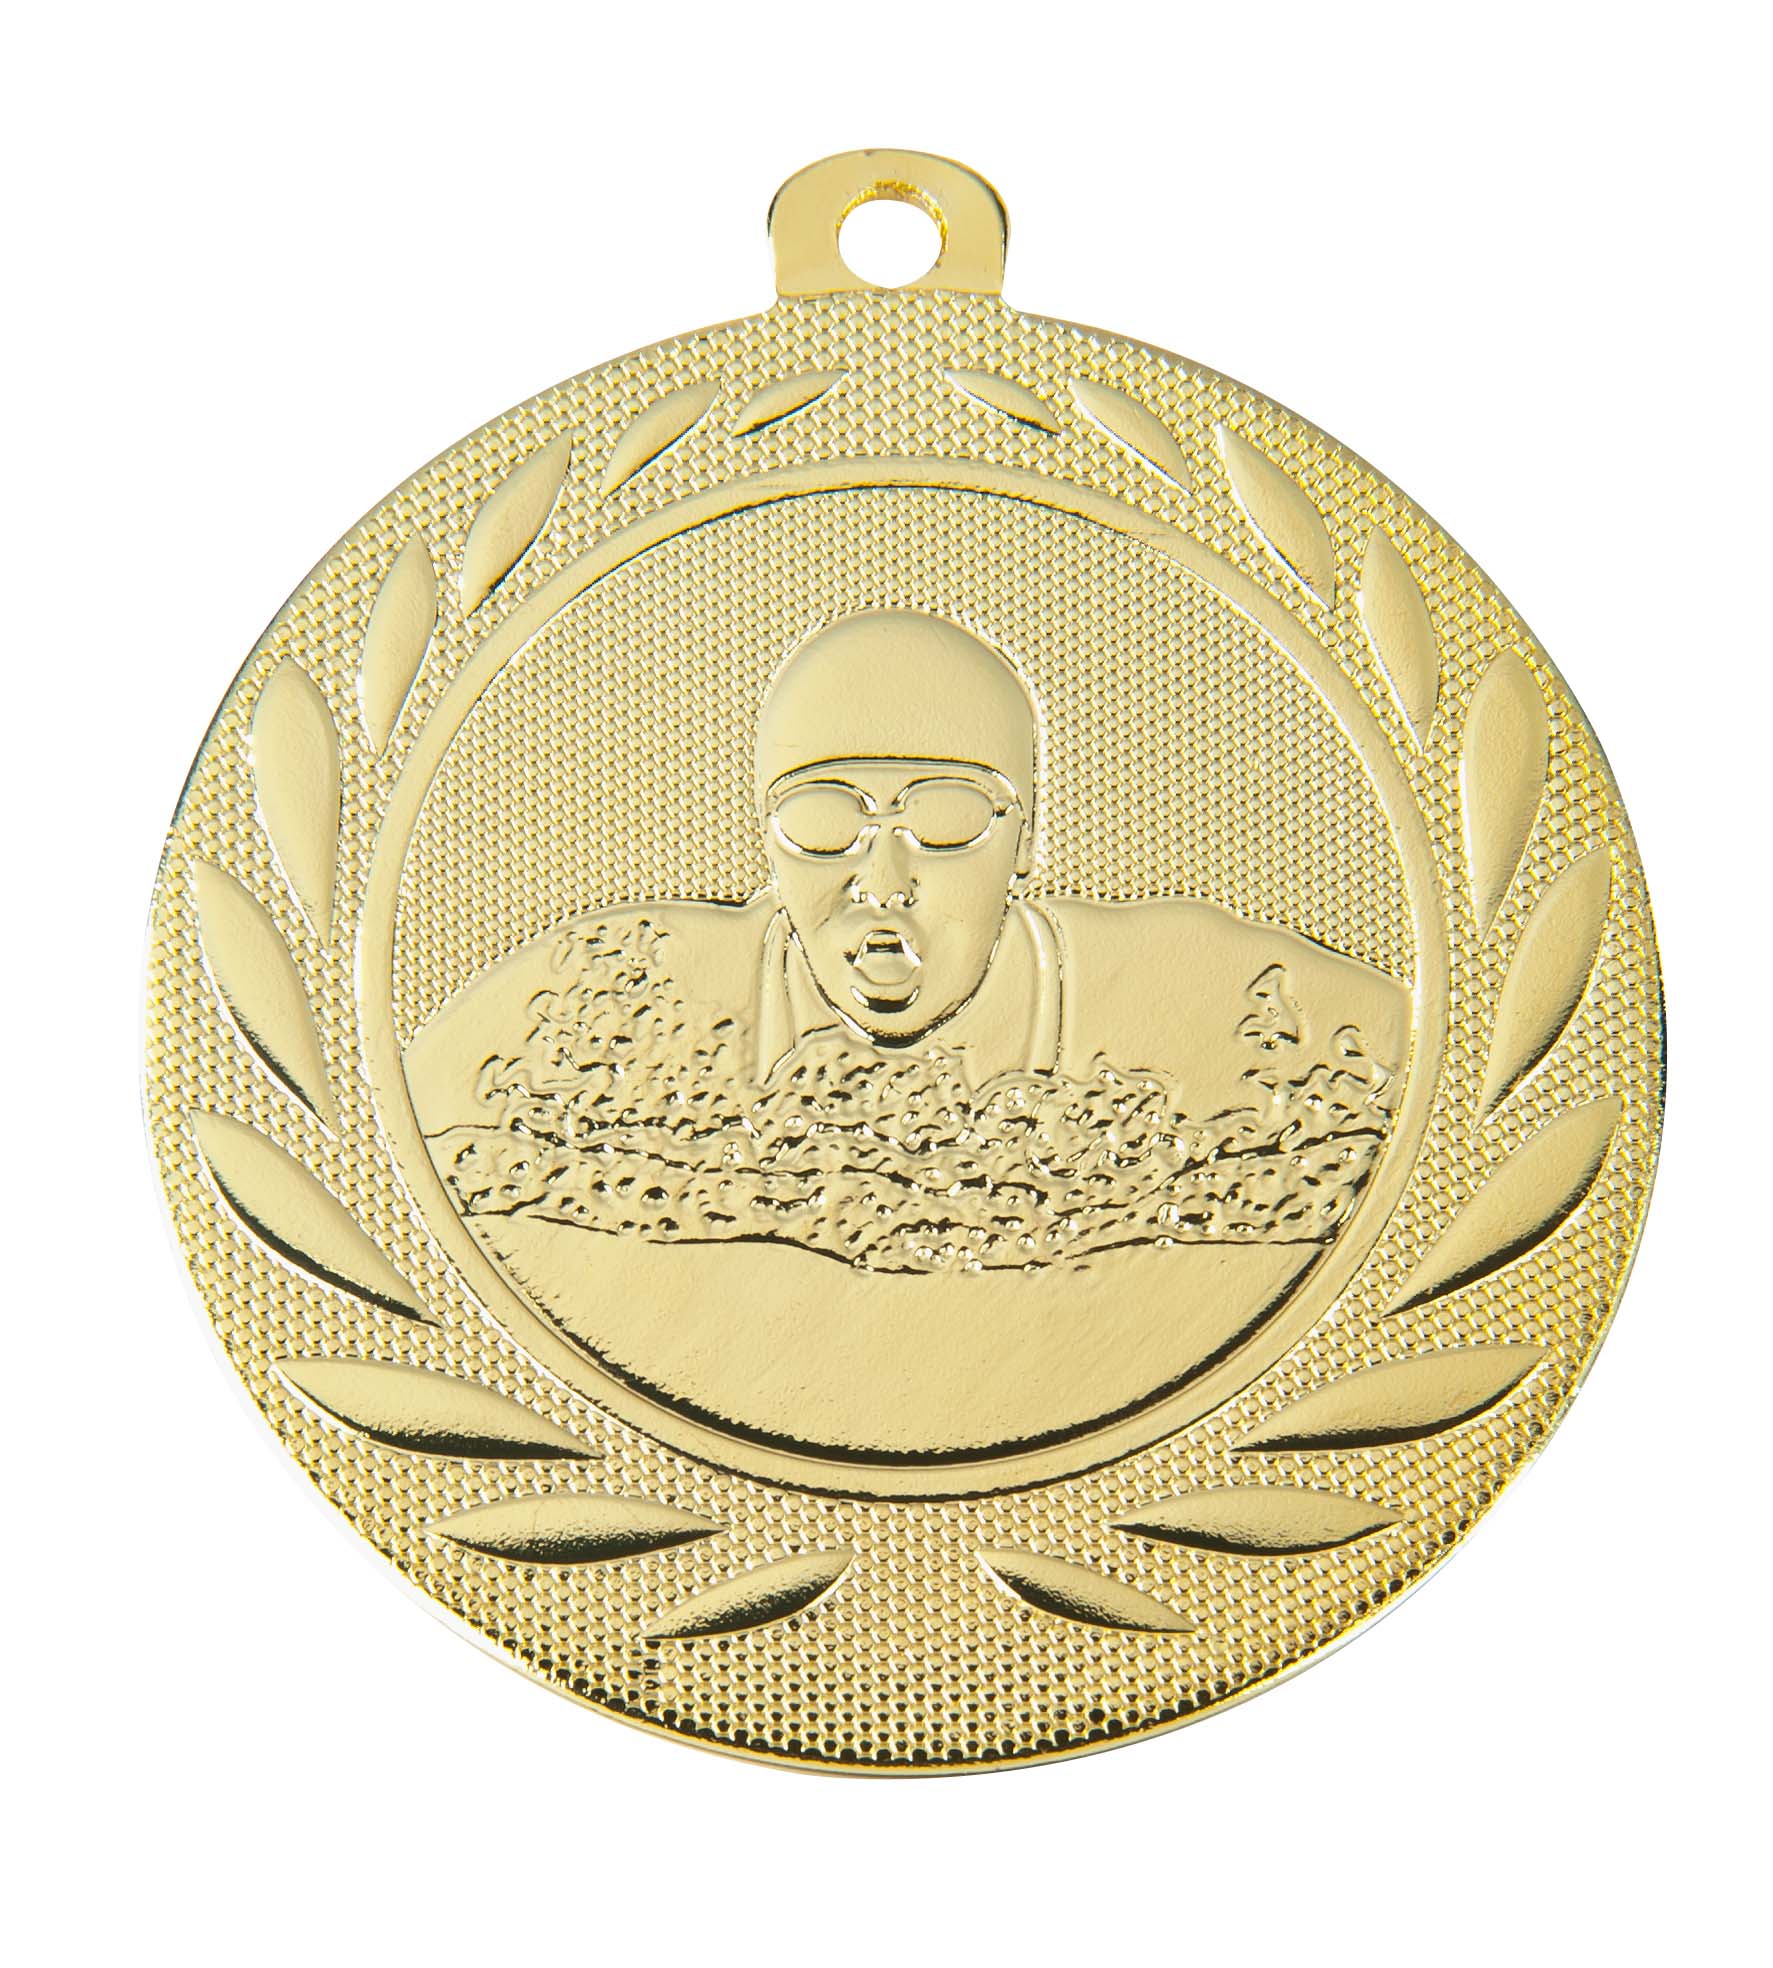 Schwimm-Medaille DI5000H inkl. Band und Beschriftung Gold Fertig montiert gegen Aufpreis